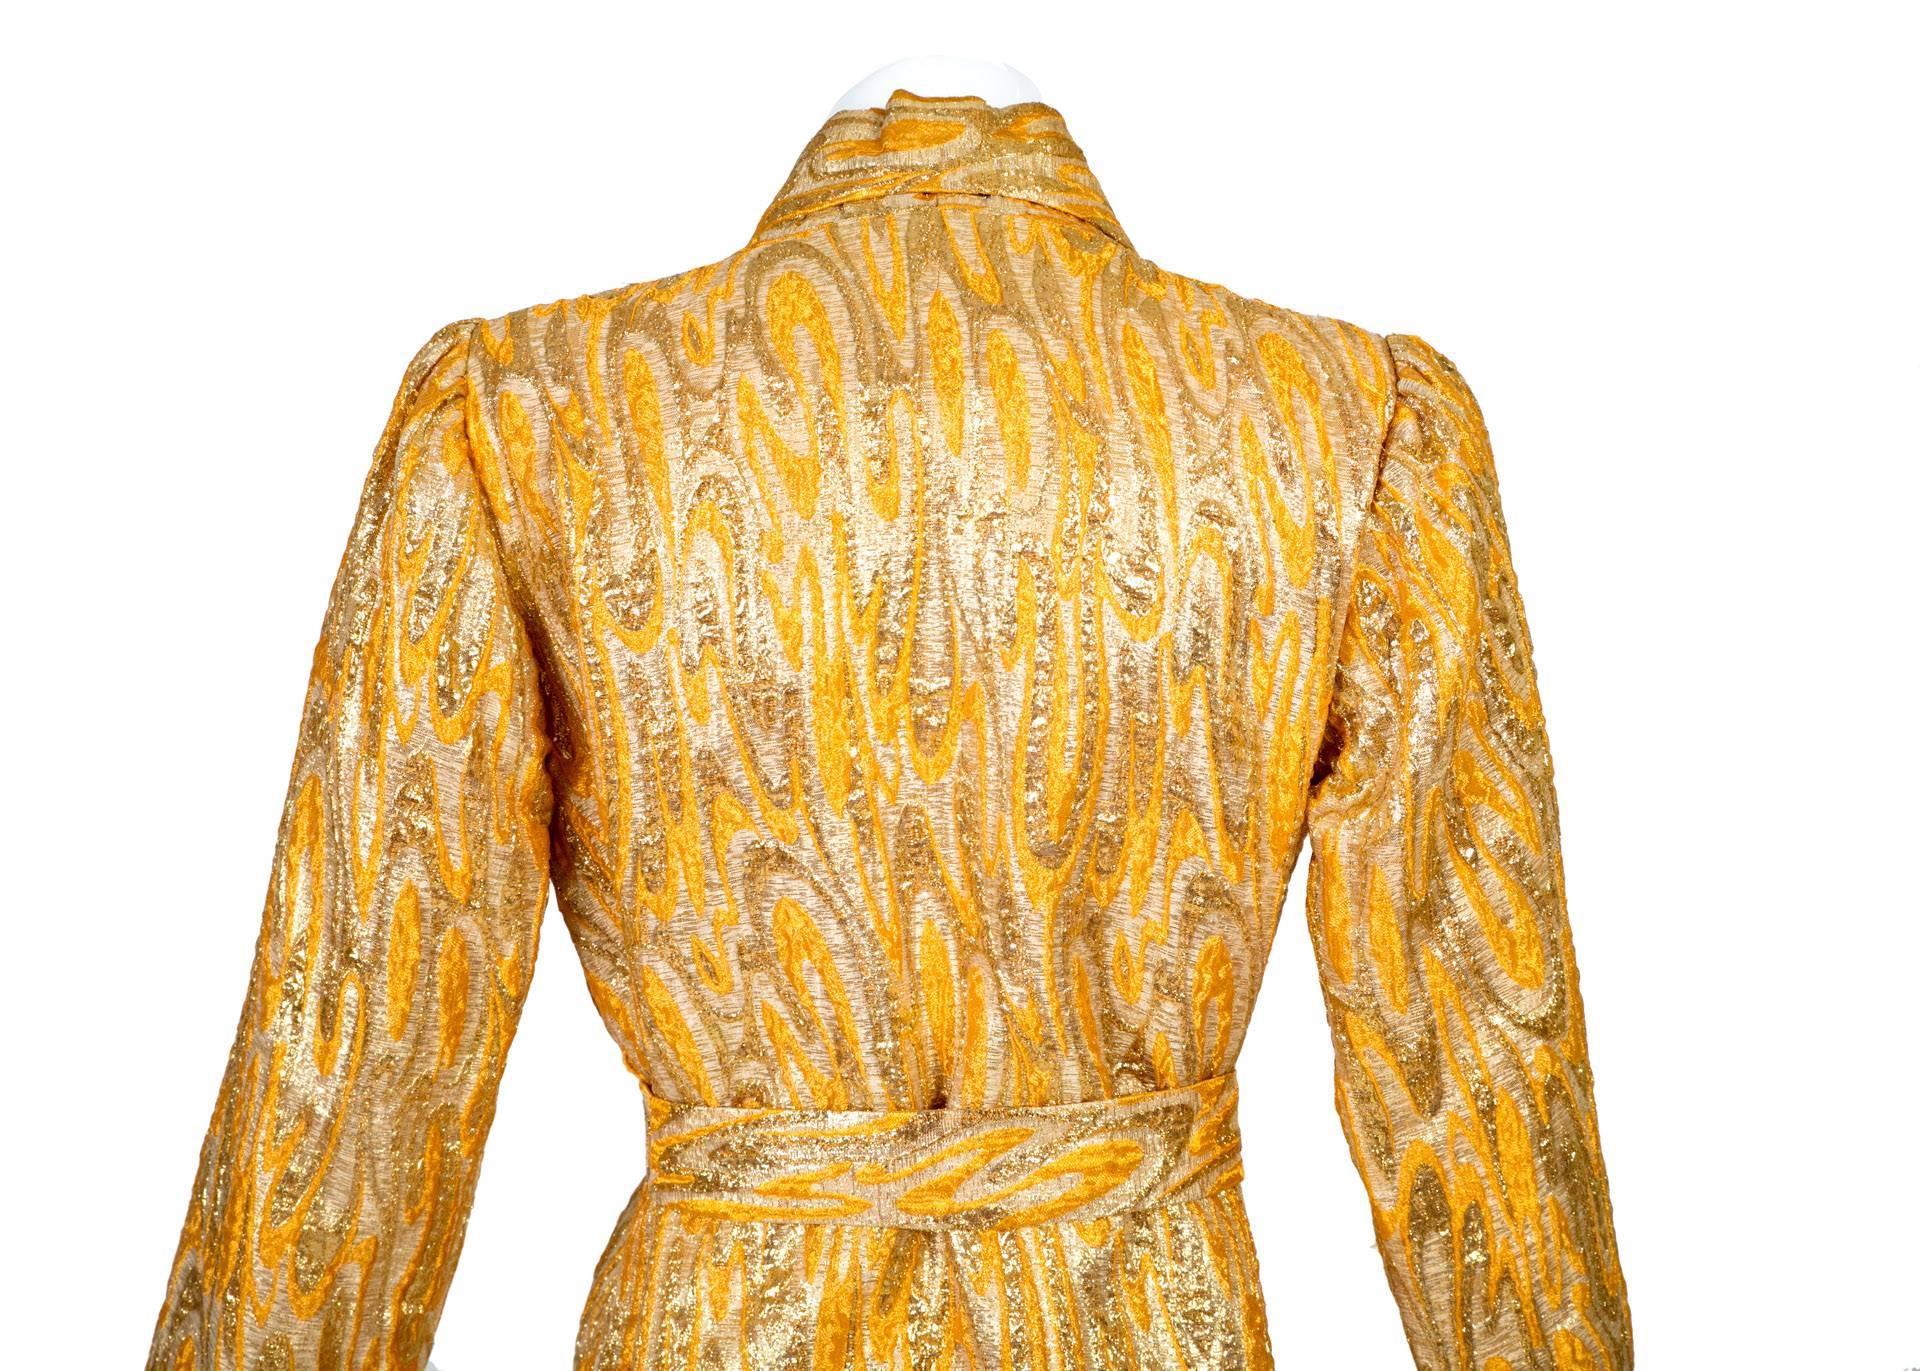  Oscar de la Renta attributed Gold Apricot Metallic Brocade Evening Coat, 1960s  2